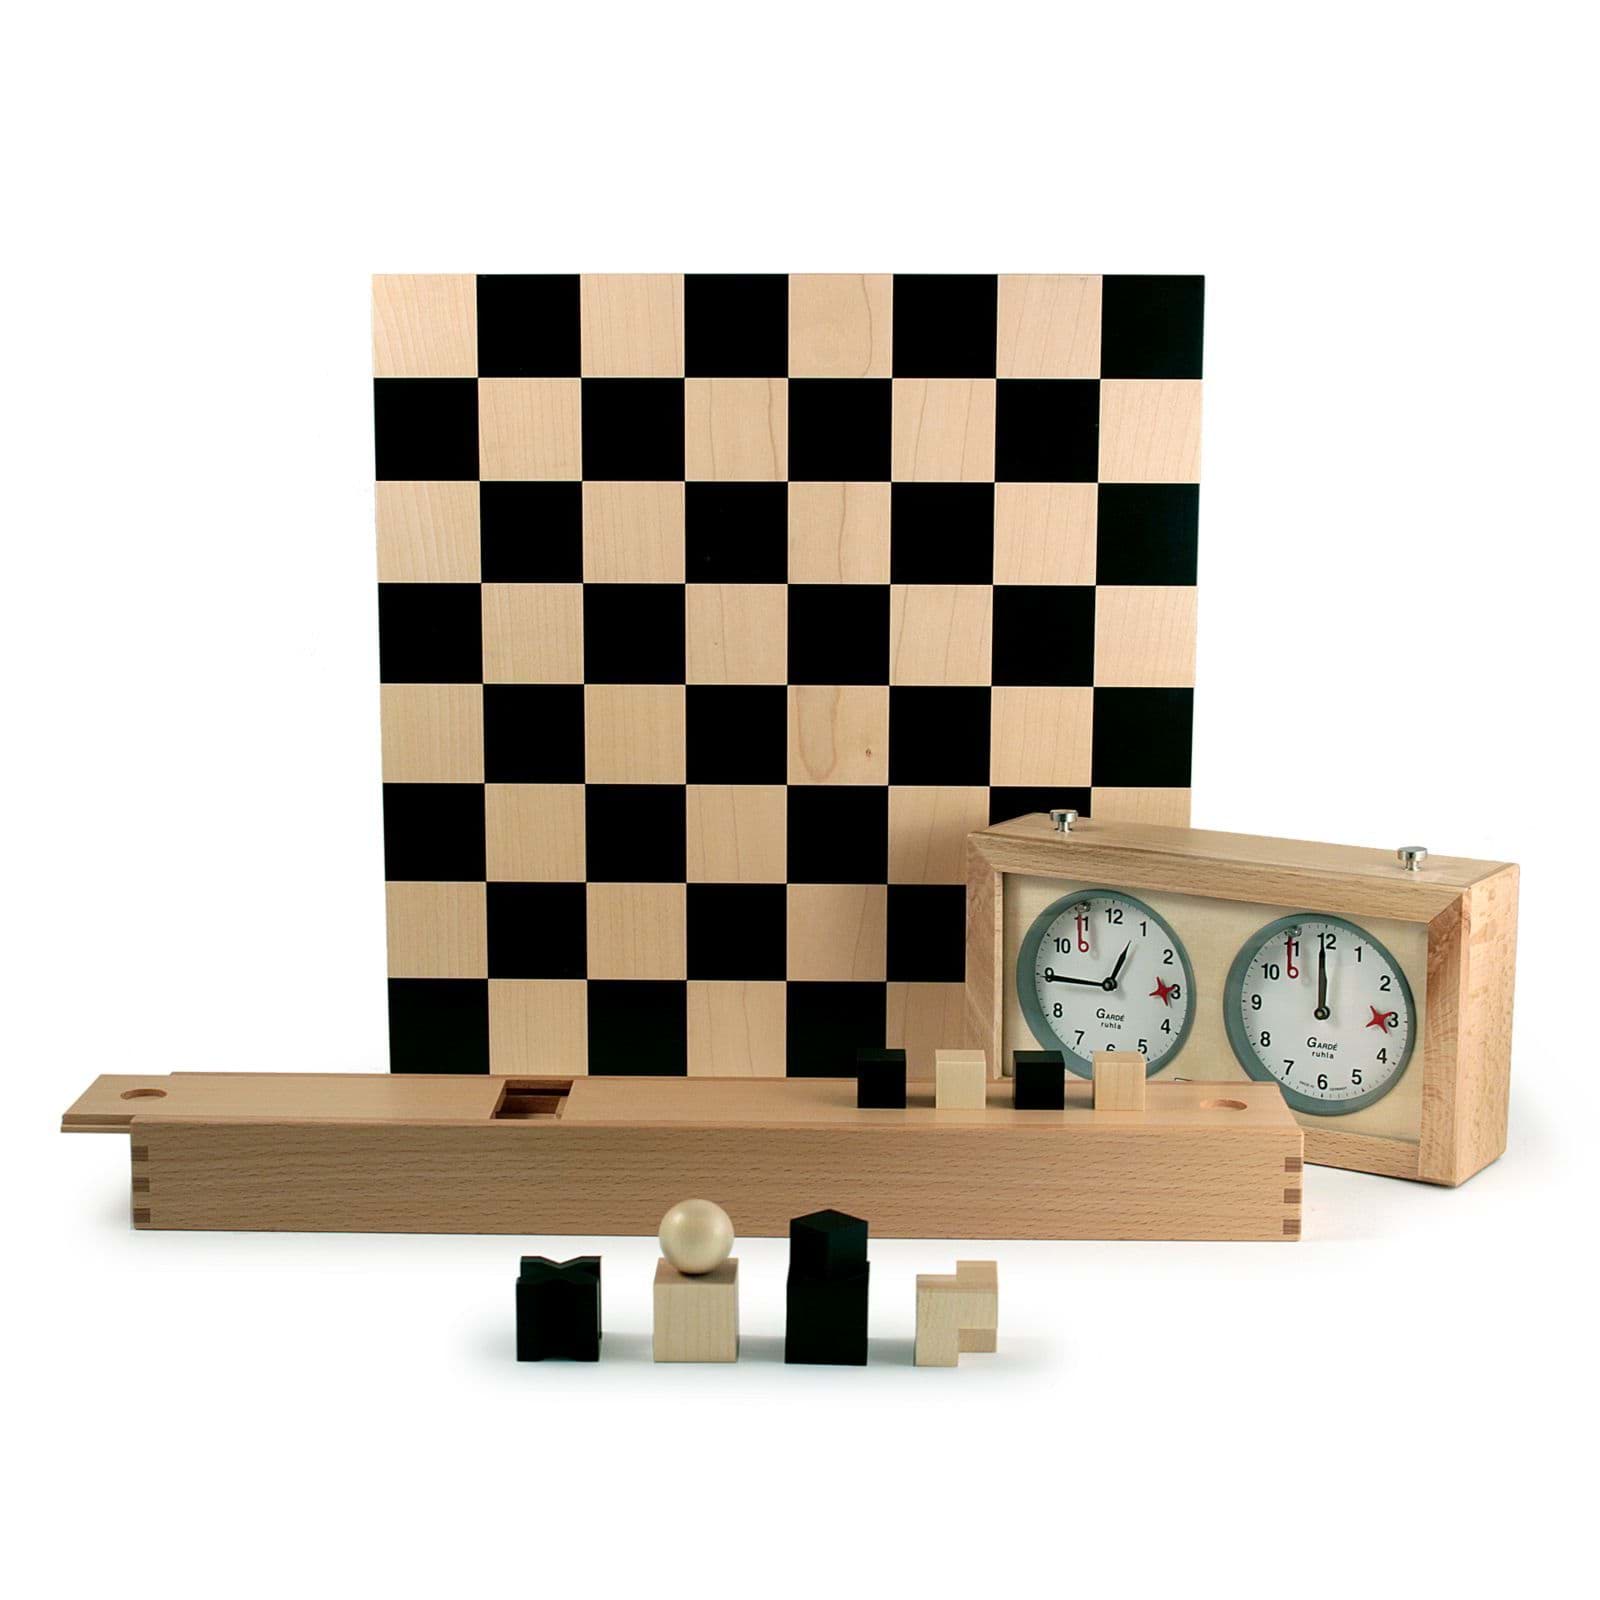 约瑟夫-哈特维格的包豪斯象棋+象棋钟 的图片
